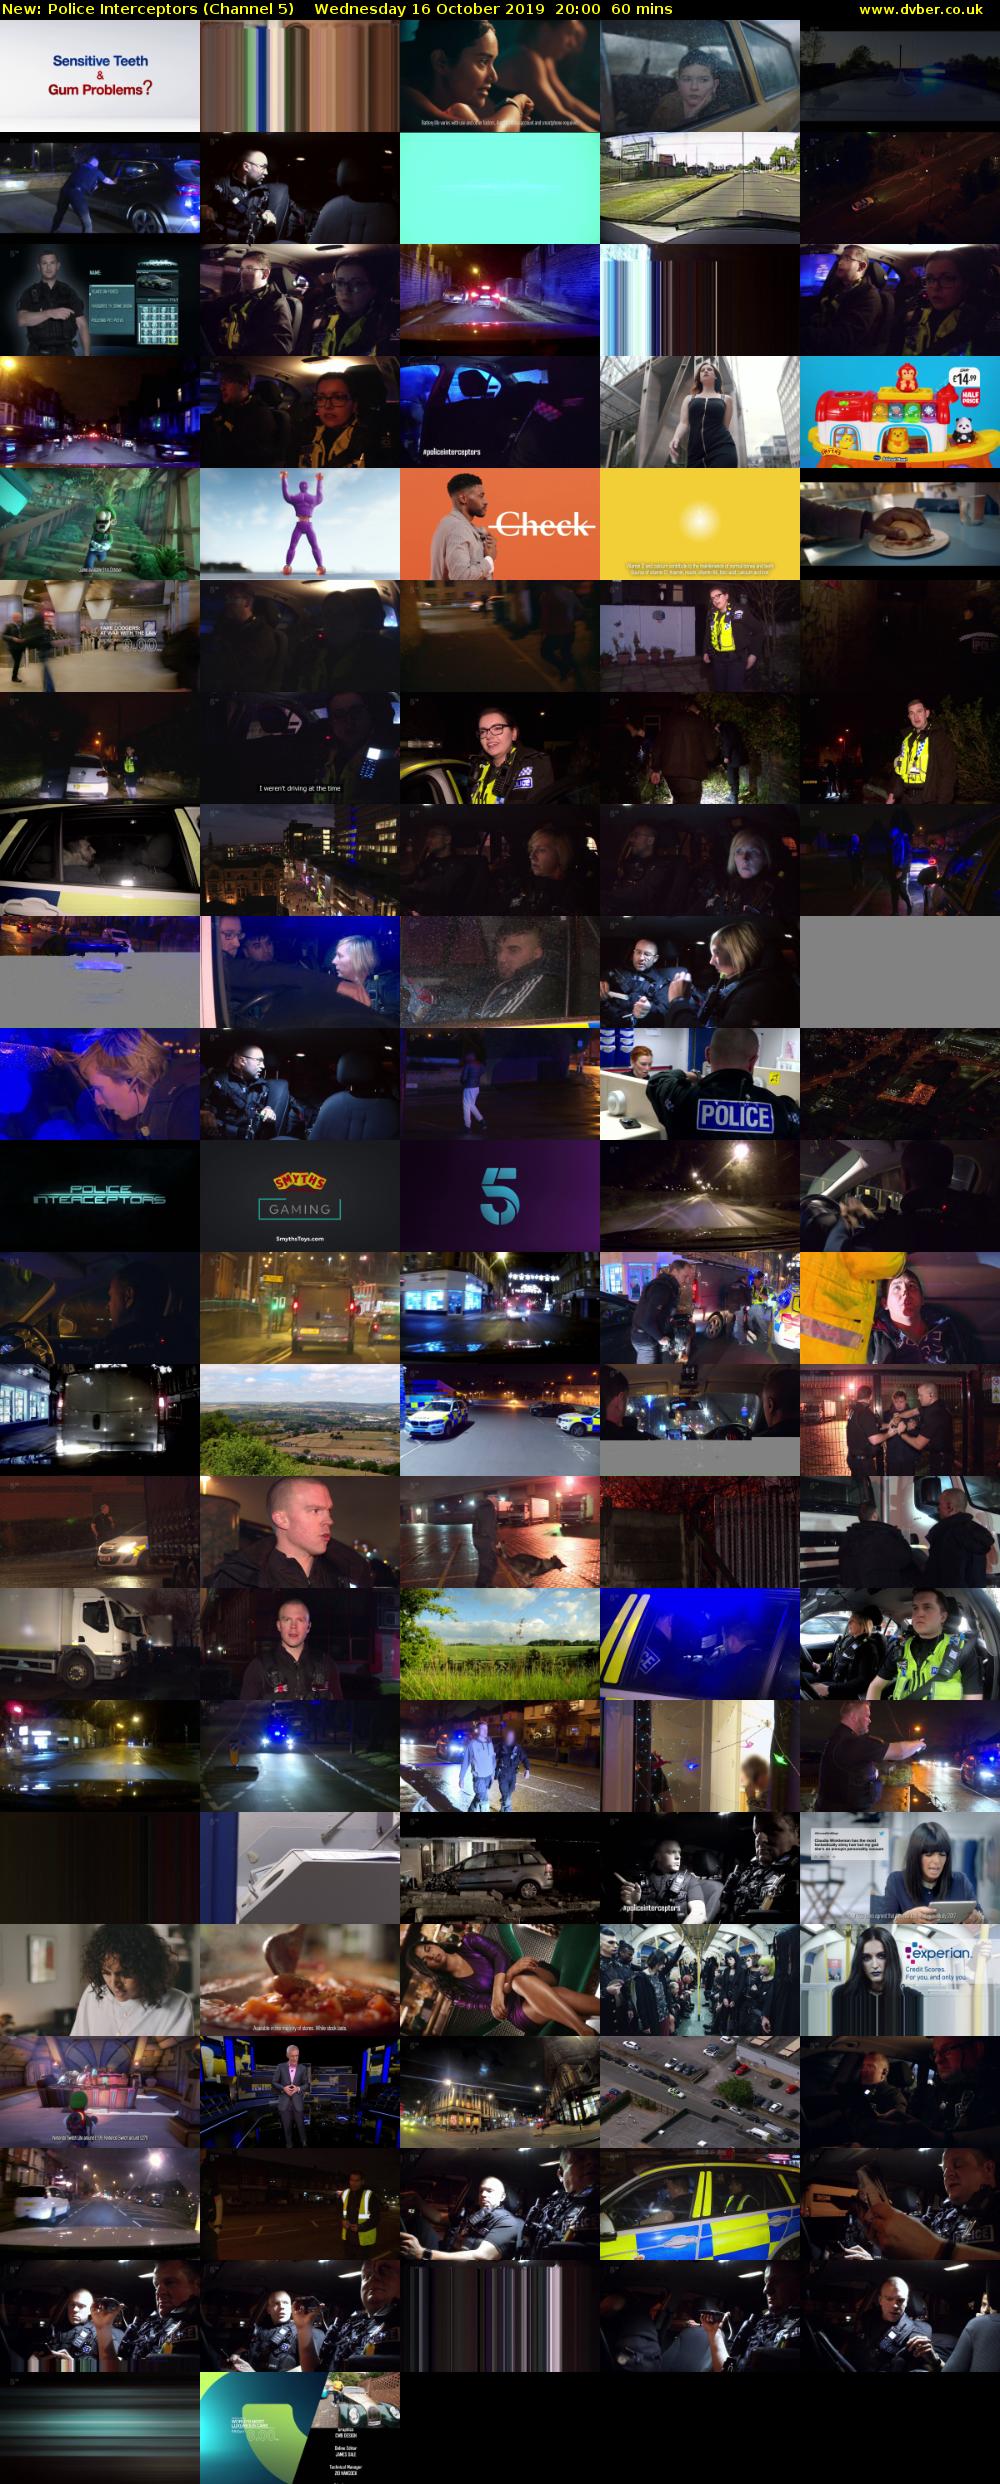 Police Interceptors (Channel 5) Wednesday 16 October 2019 20:00 - 21:00